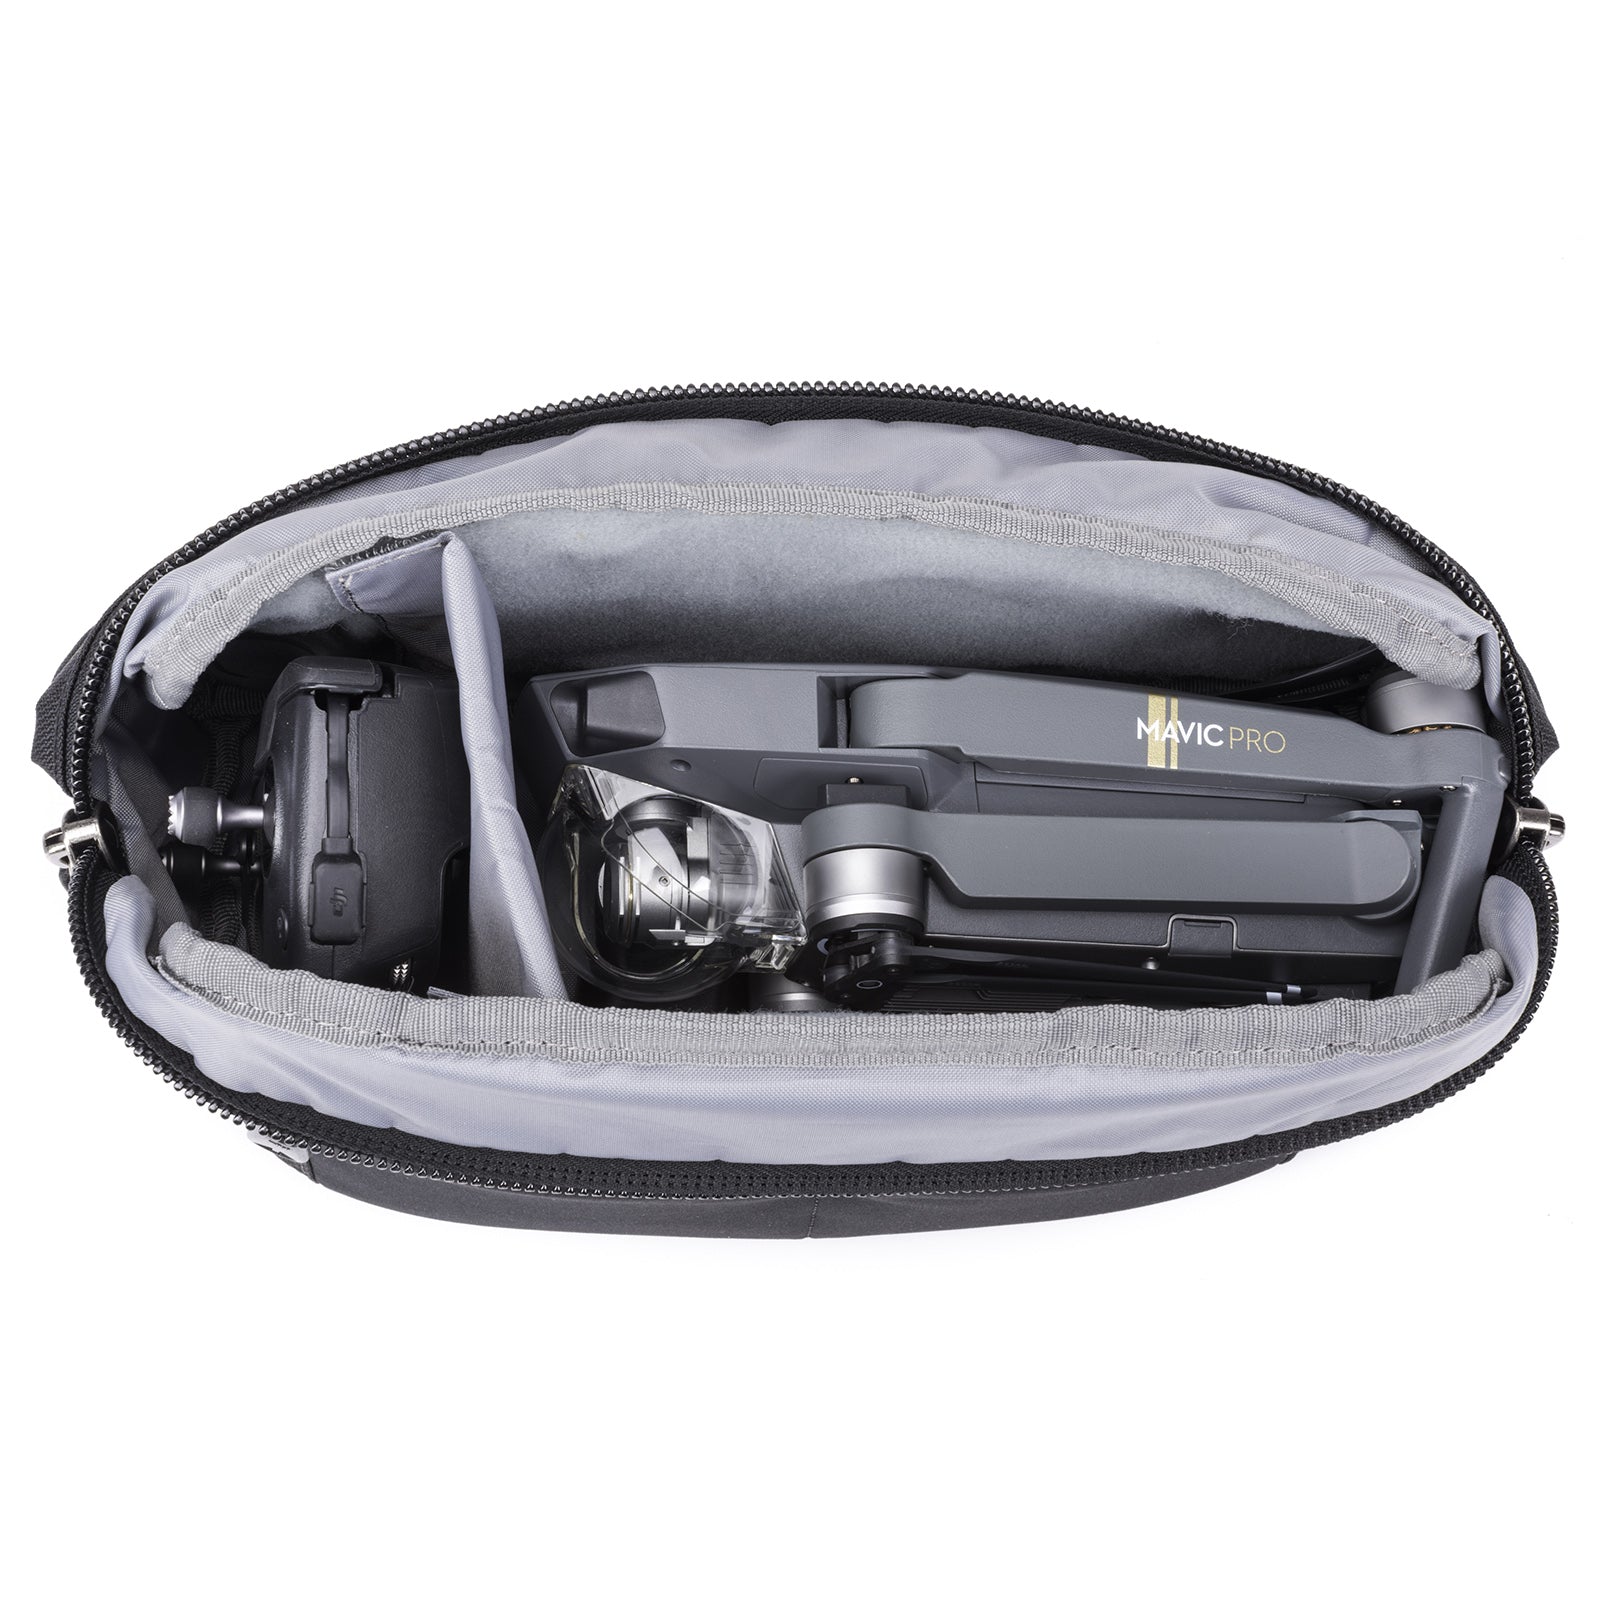 HIFFIN DSLR/SLR Camera Shoulder Bag Case with Adjustable Shoulder Stra